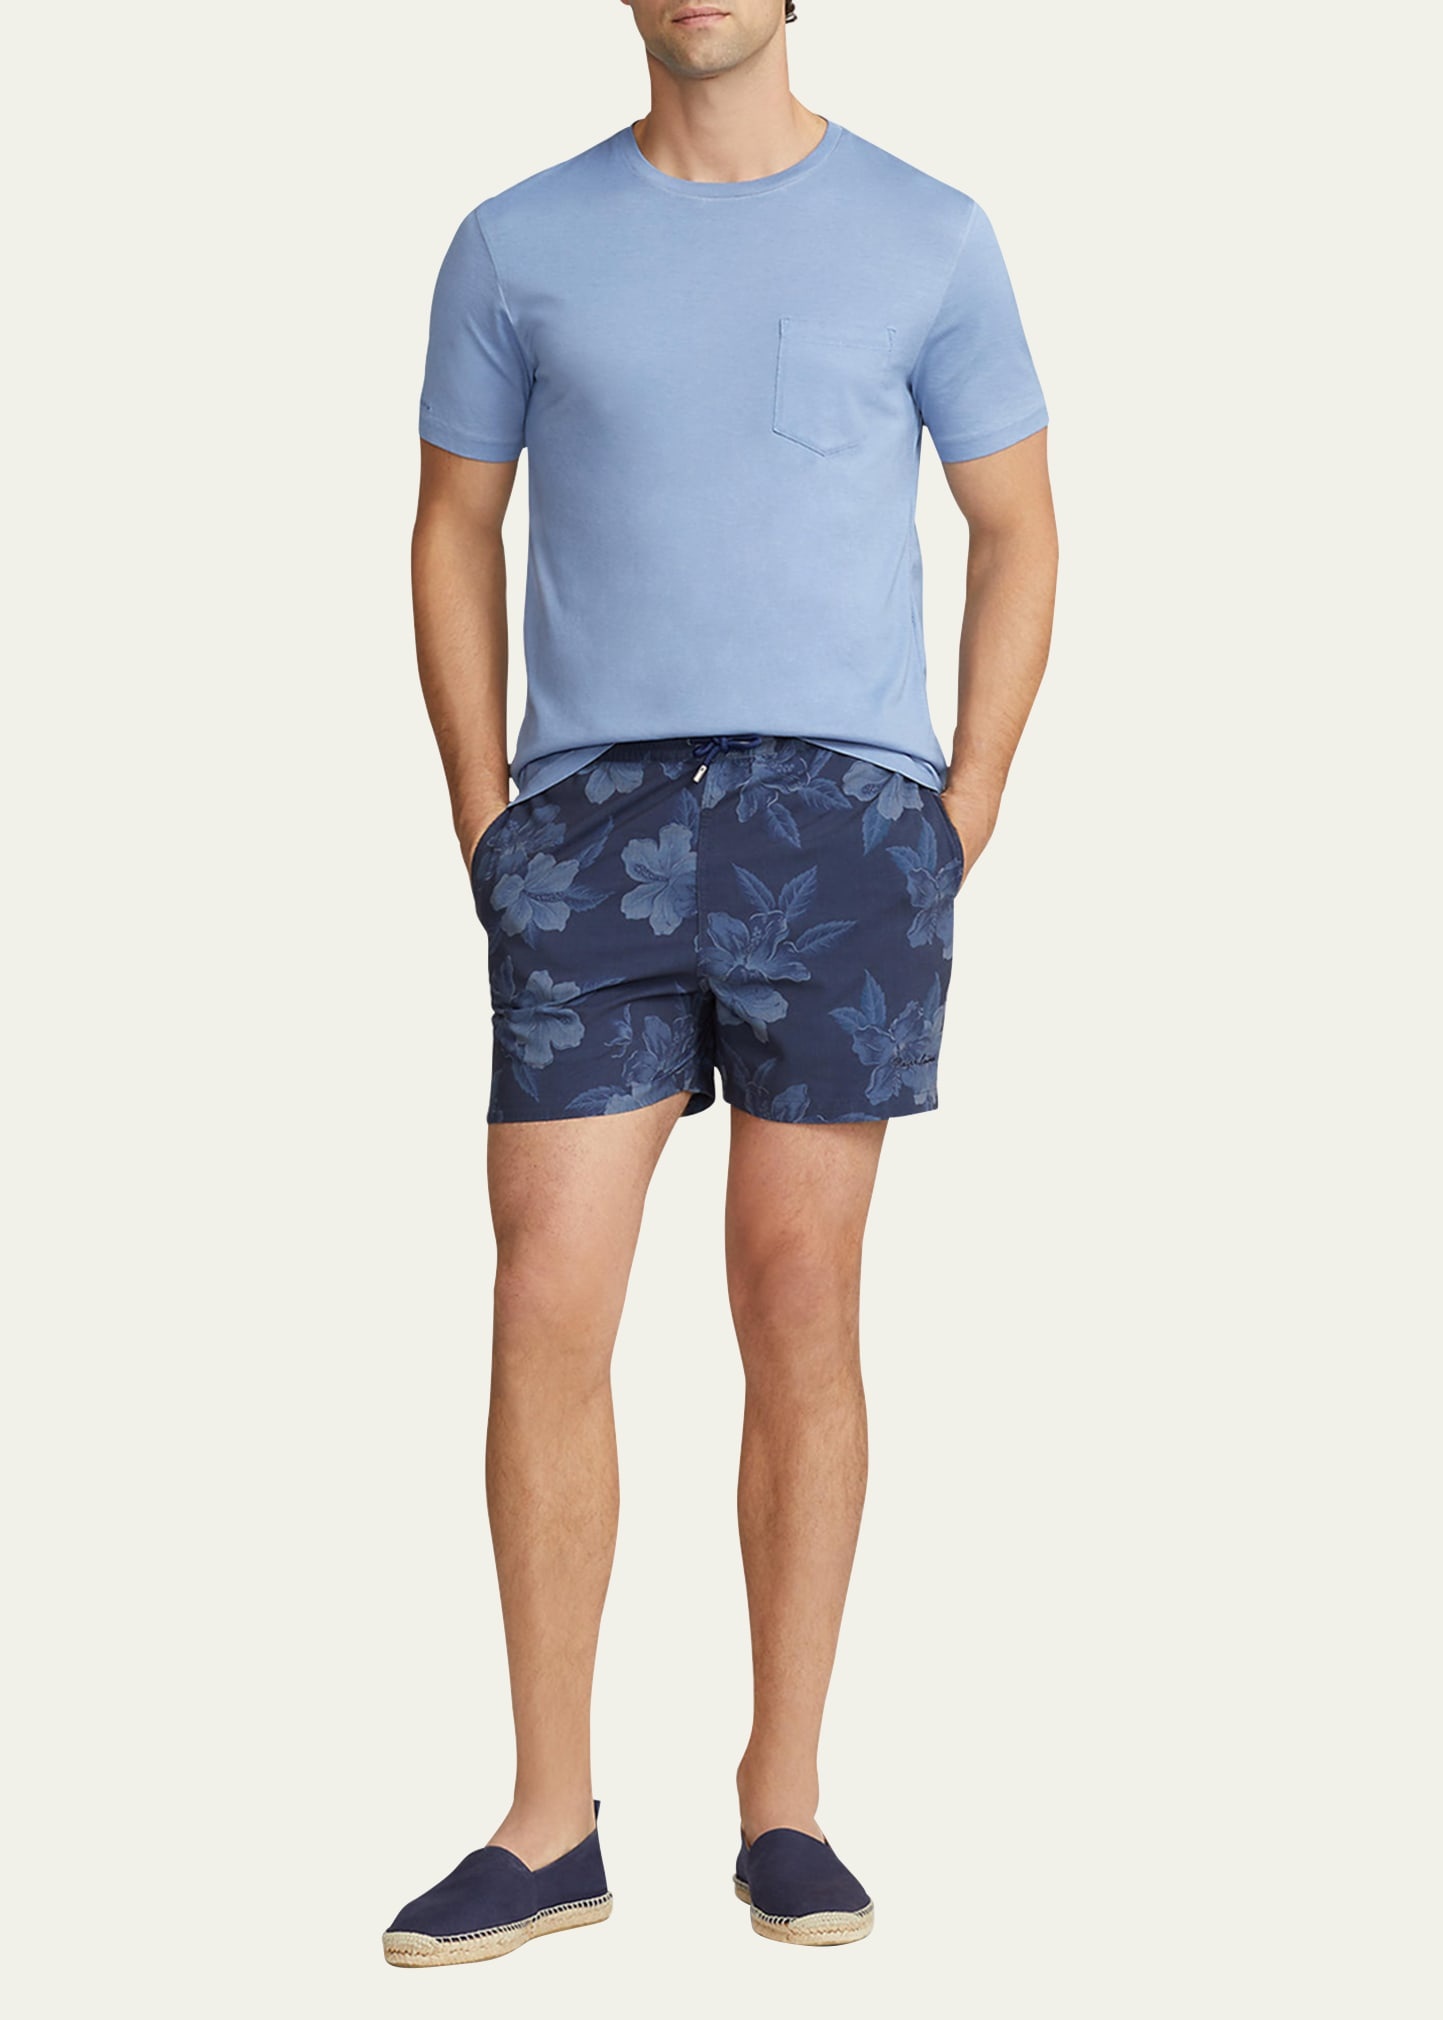 Men's Garment-Dyed Jersey T-Shirt - 2